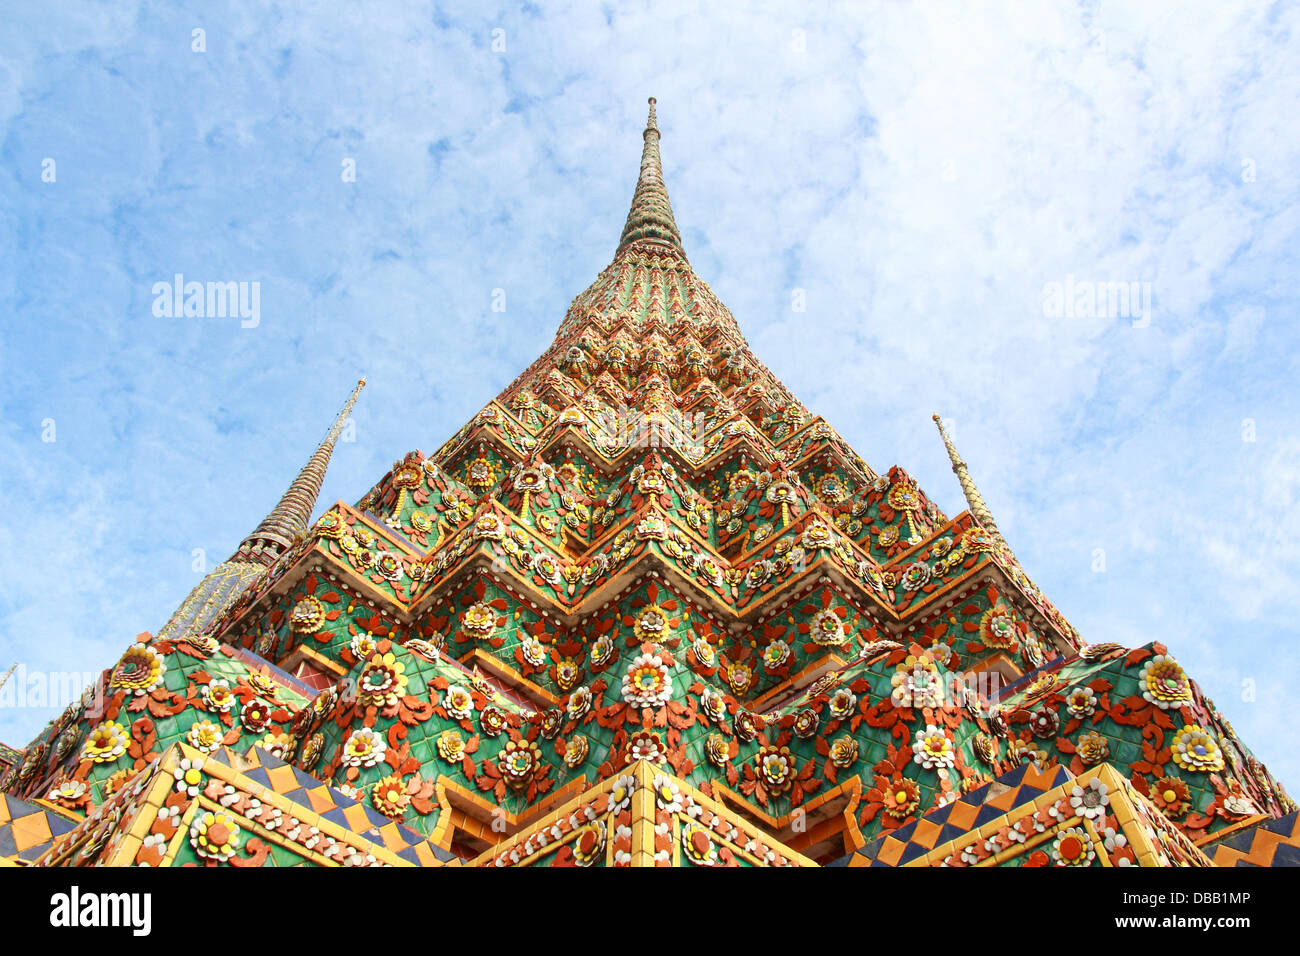 Wat Pho, en Bangkok, Tailandia. 'Wat' significa templo en tailandés. El templo es uno de los más famosos de Bangkok sitios turísticos. Foto de stock